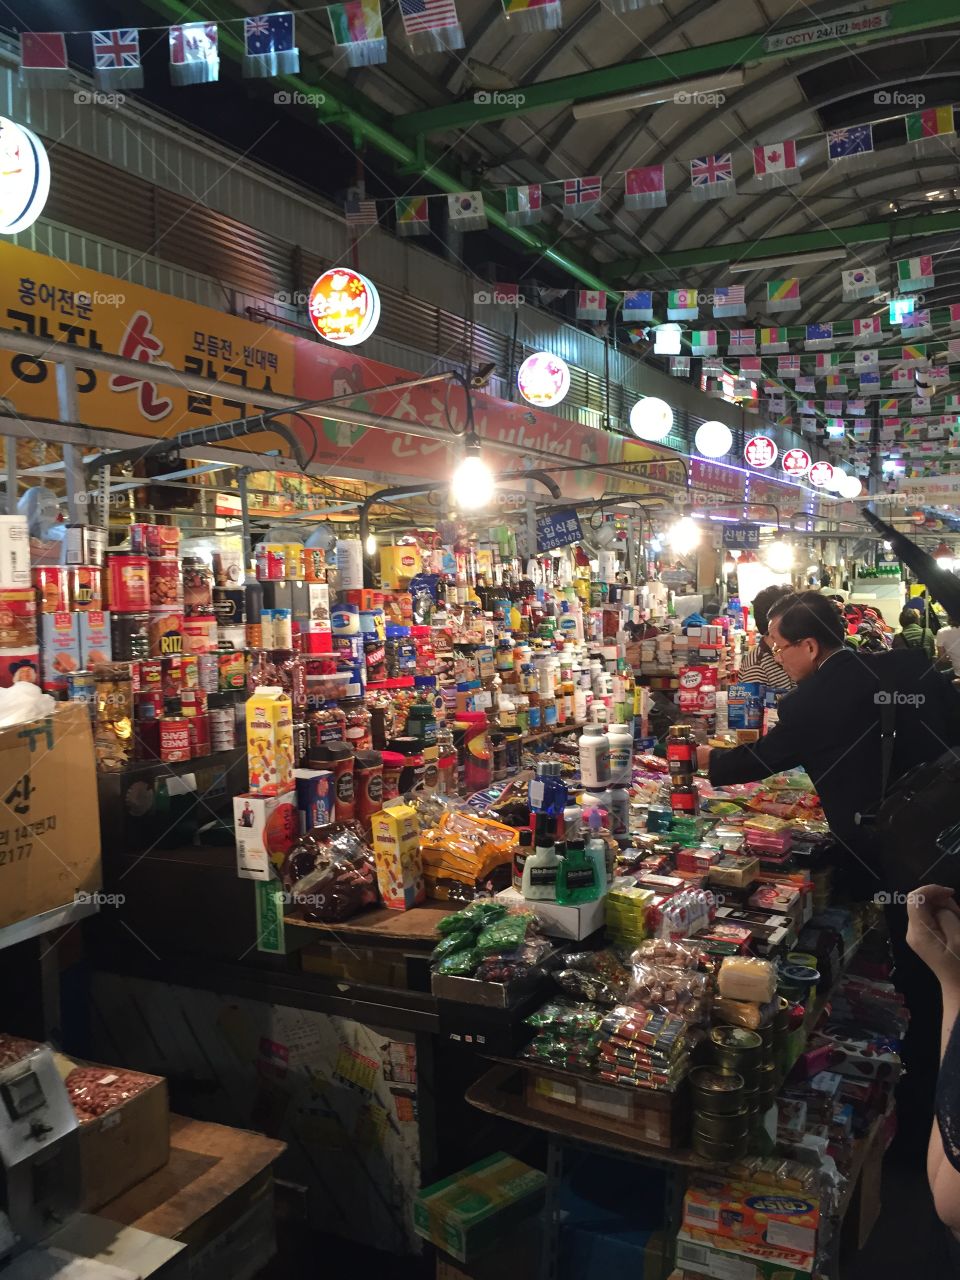 Seoul Street Market. A bustling street market in Seoul, South Korea